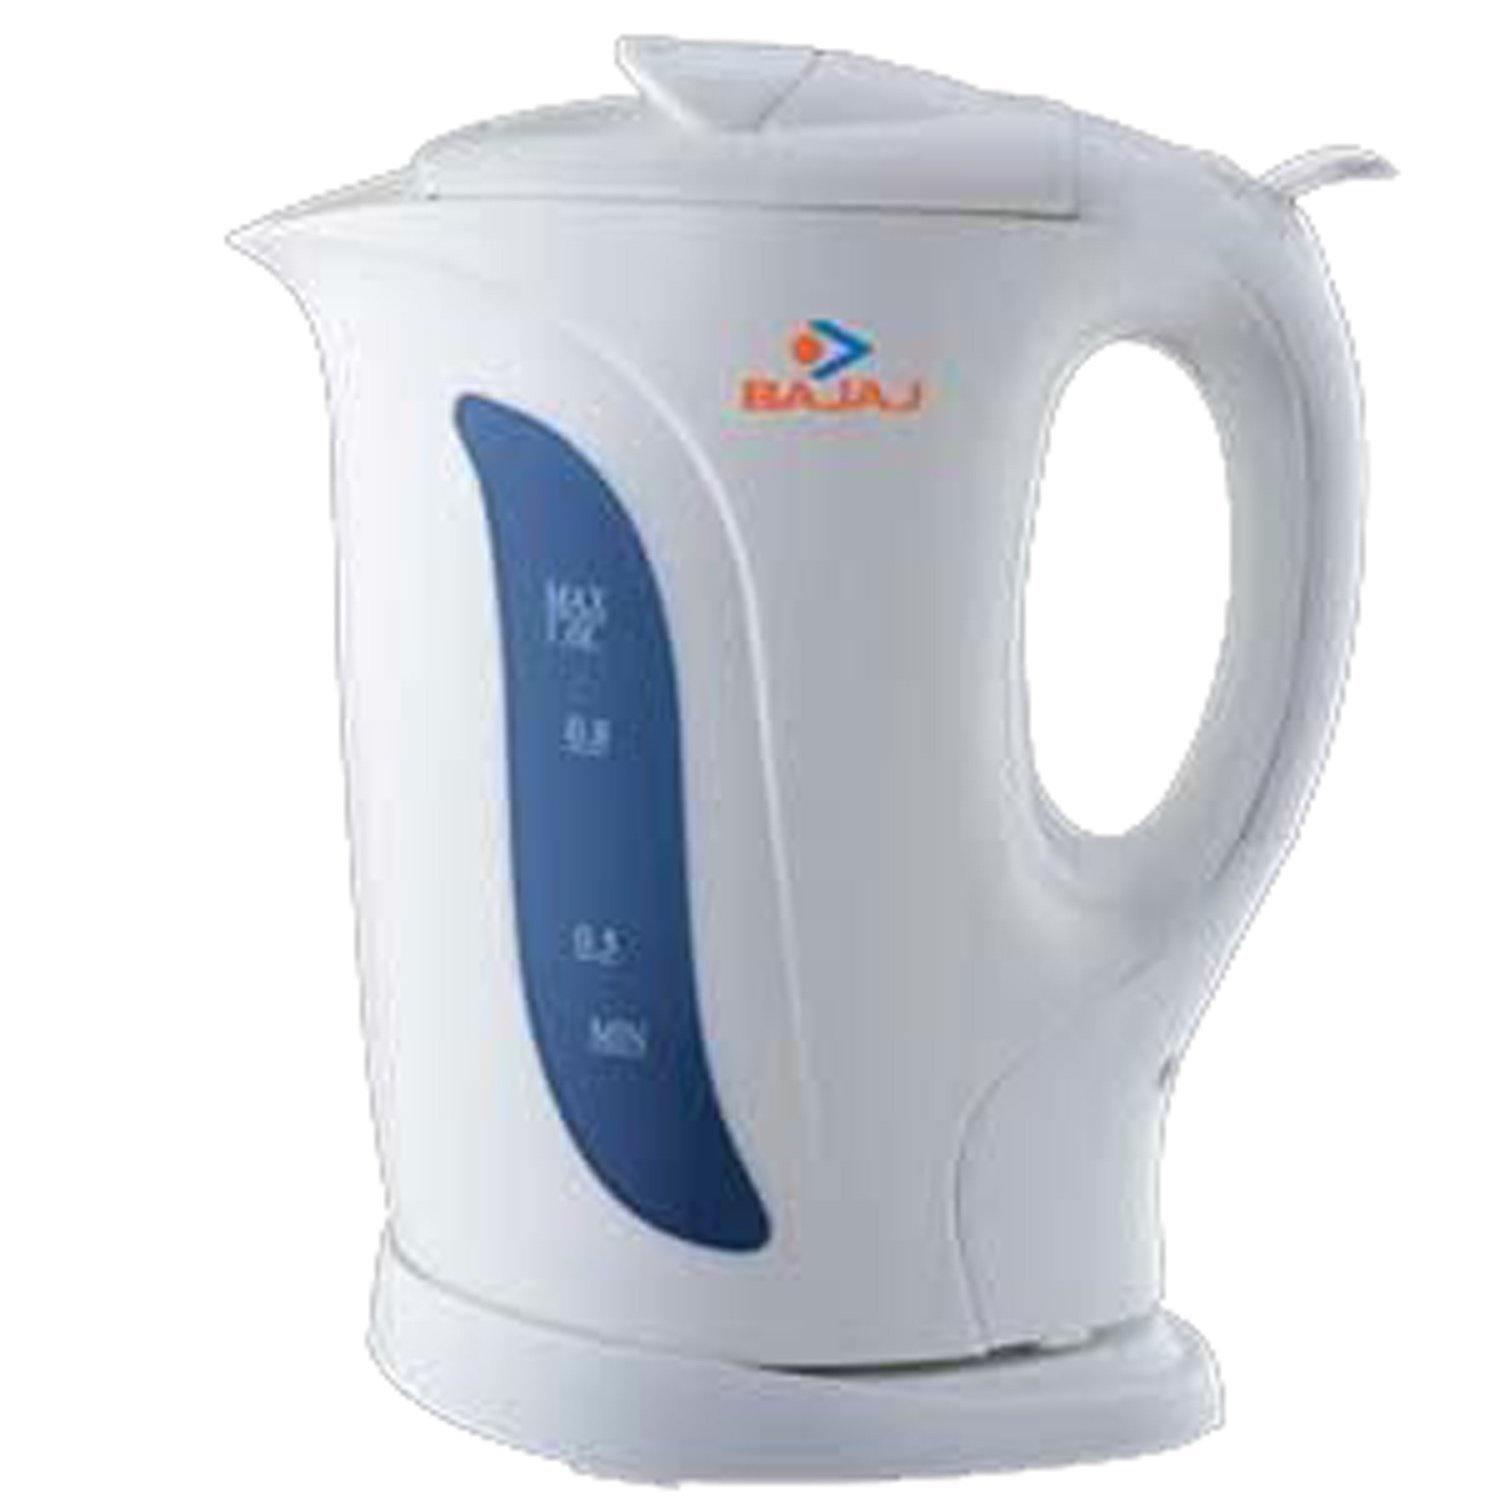 Bajaj Non-Strix Electric Kettle-1000ml-Home & Kitchen Appliances-dealsplant